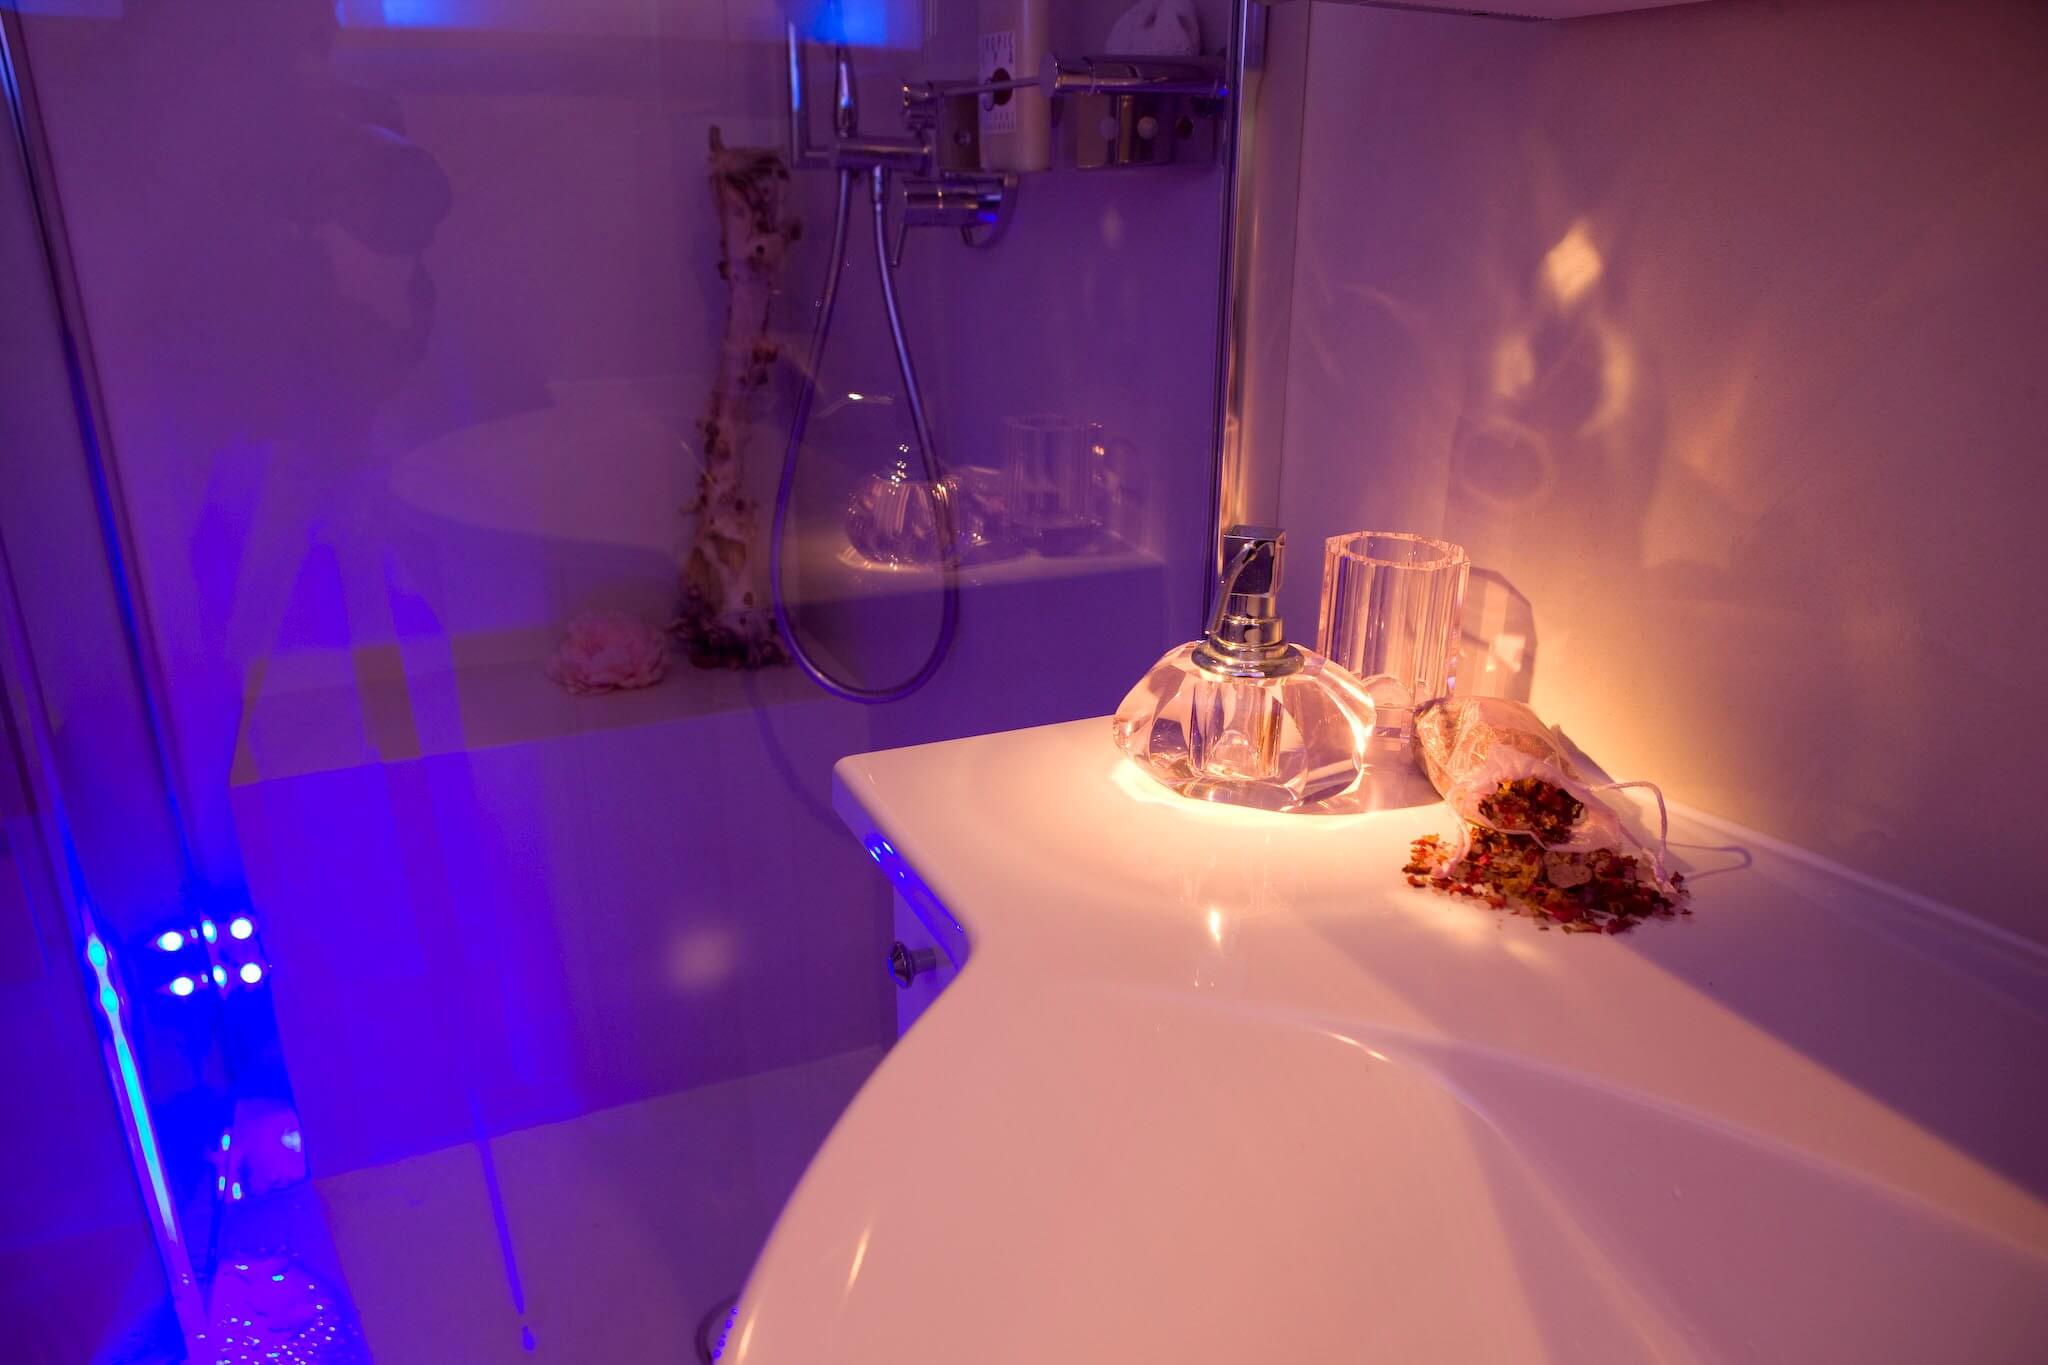 Stimmungsvolle Lichtszenarien im Badezimmer Die Farbtherapie harmonisiert das körperliche und das seelische Wohlbefinden mit Hilfe von Farben. Diese verfügen über eine bestimmte Wellenlänge, die je nach Farbton einen entspannenden oder vitalisierenden Effekt aufweist. Die hinter einer transparenten Glaswand verborgene Regendusche mit LED Leuchten besitzt eine intuitiv zu bedienende Schaltfläche, auf der die einzelnen Impulse individuell eingestellt werden können. Auch eine Programmierung im Voraus erlaubt es in der Früh mit den Strahlen einer aufgehenden Sonne aufzustehen. In dem vorliegenden Projekt wurde der Colorshower der Firma KWS eingebaut, der über moderne Lichtelemente in der Kopfbrause verfügt. Vielseitige Funktionen, wie „Wave“, „Sweep“ und viele mehr lassen die LEDs in einem vorgegebenen Rhythmus aufleuchten, der je nach Wunsch beruhigt oder aufweckt. Auf der beheizten Sitzbank in der bodeneben gestalteten Dusche kann man sich eine Weile von dem Alltag entspannen und all den Stress hinter sich lassen, während von oben warme Wasserstrahlen herabfallen.